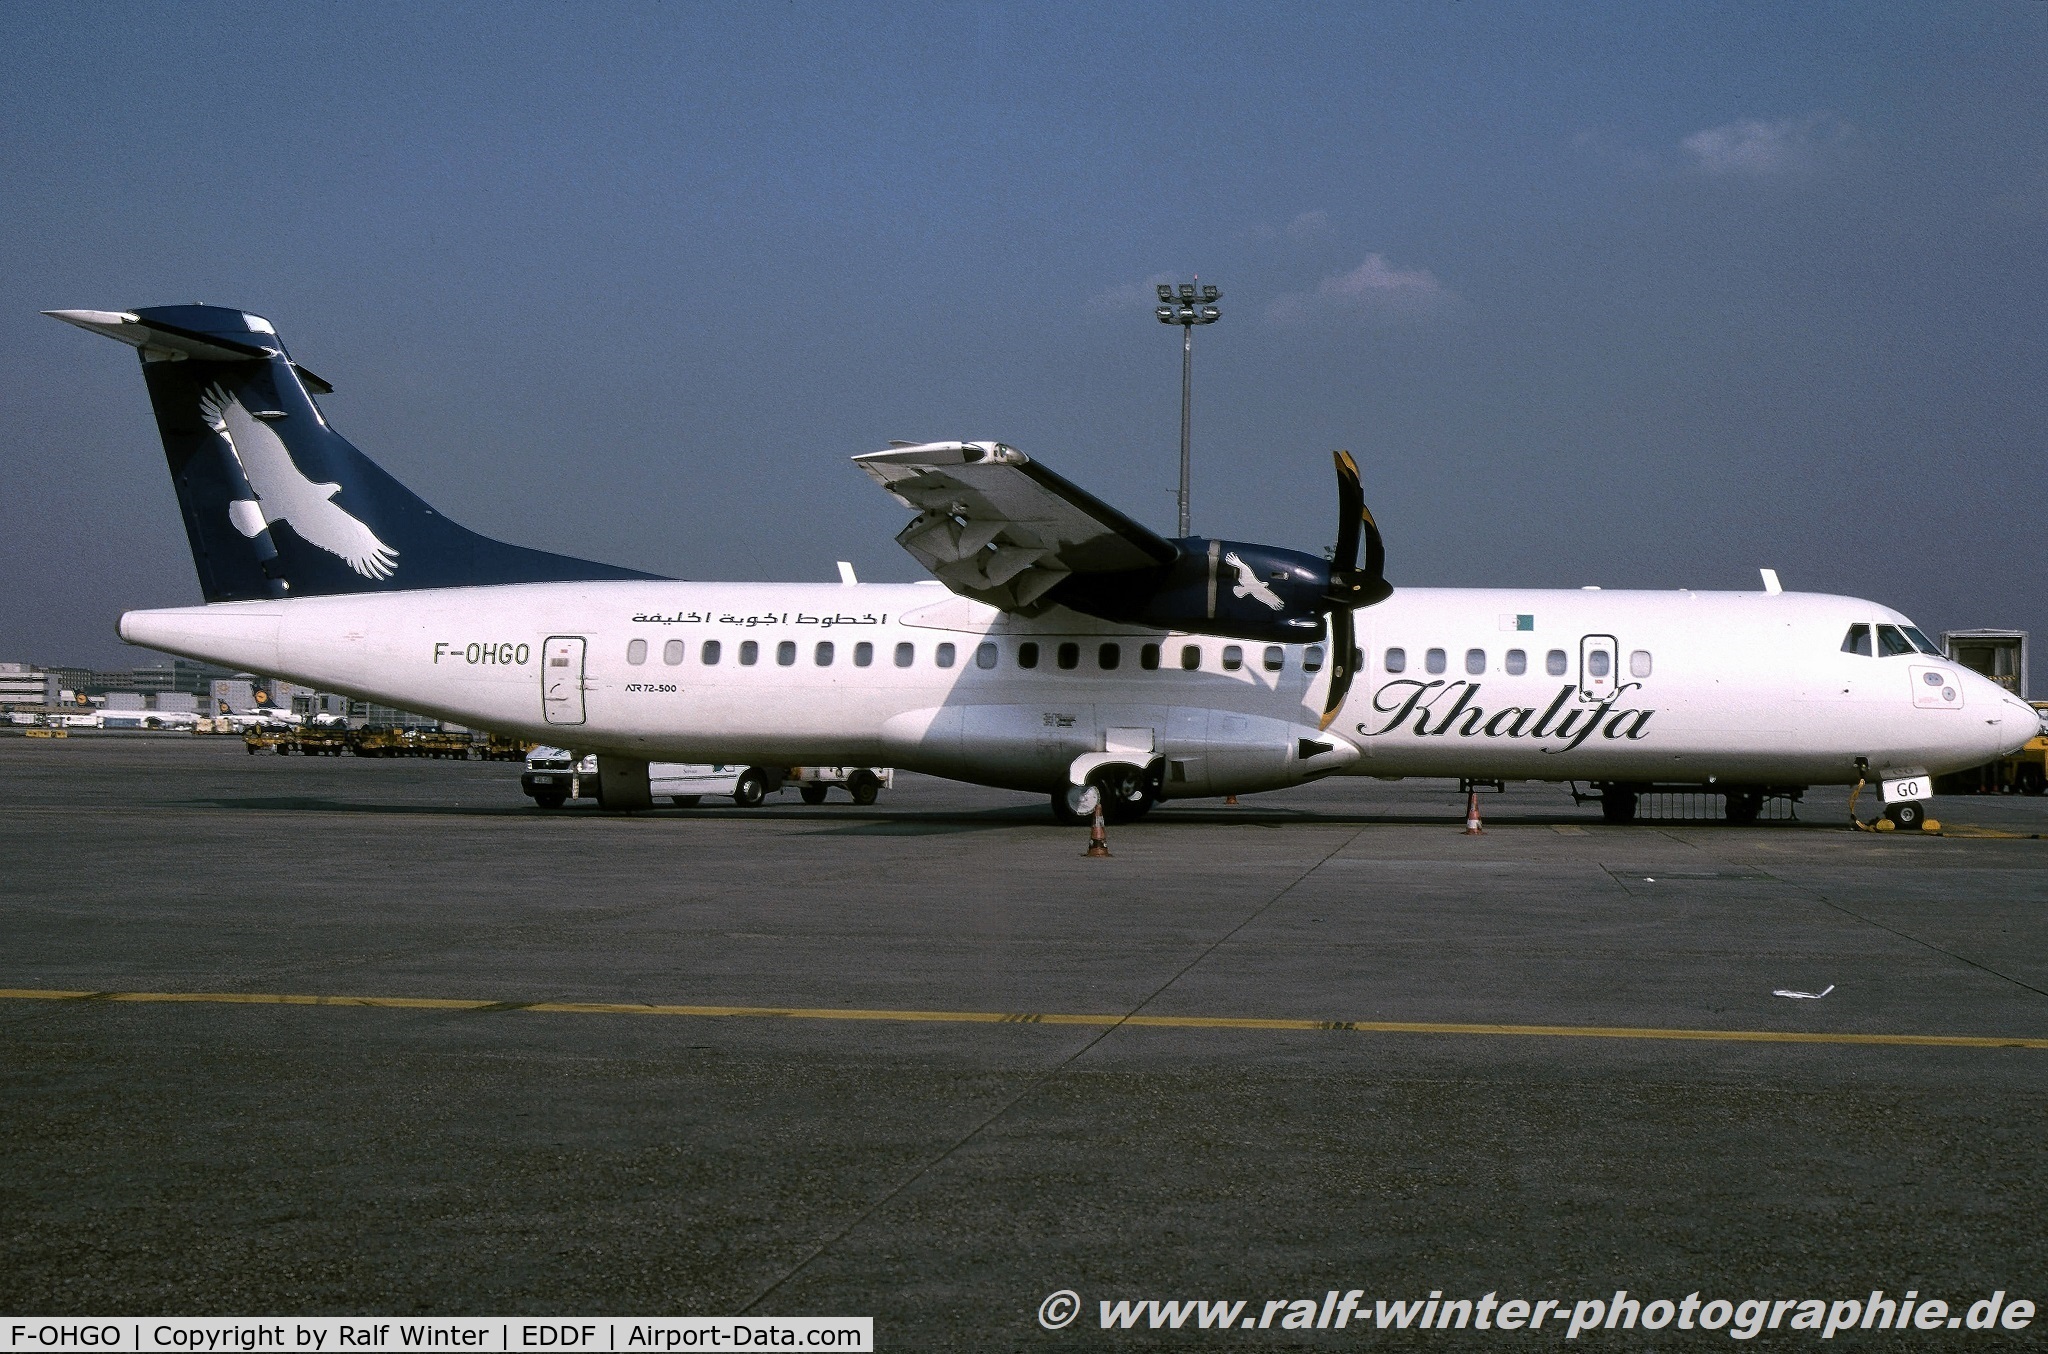 F-OHGO, 2000 ATR 72-212A C/N 652, ATR 72-212A 500 - K6 KZW Khalifa Airways - 652 - F-OHGO - 04.2003 - FRA